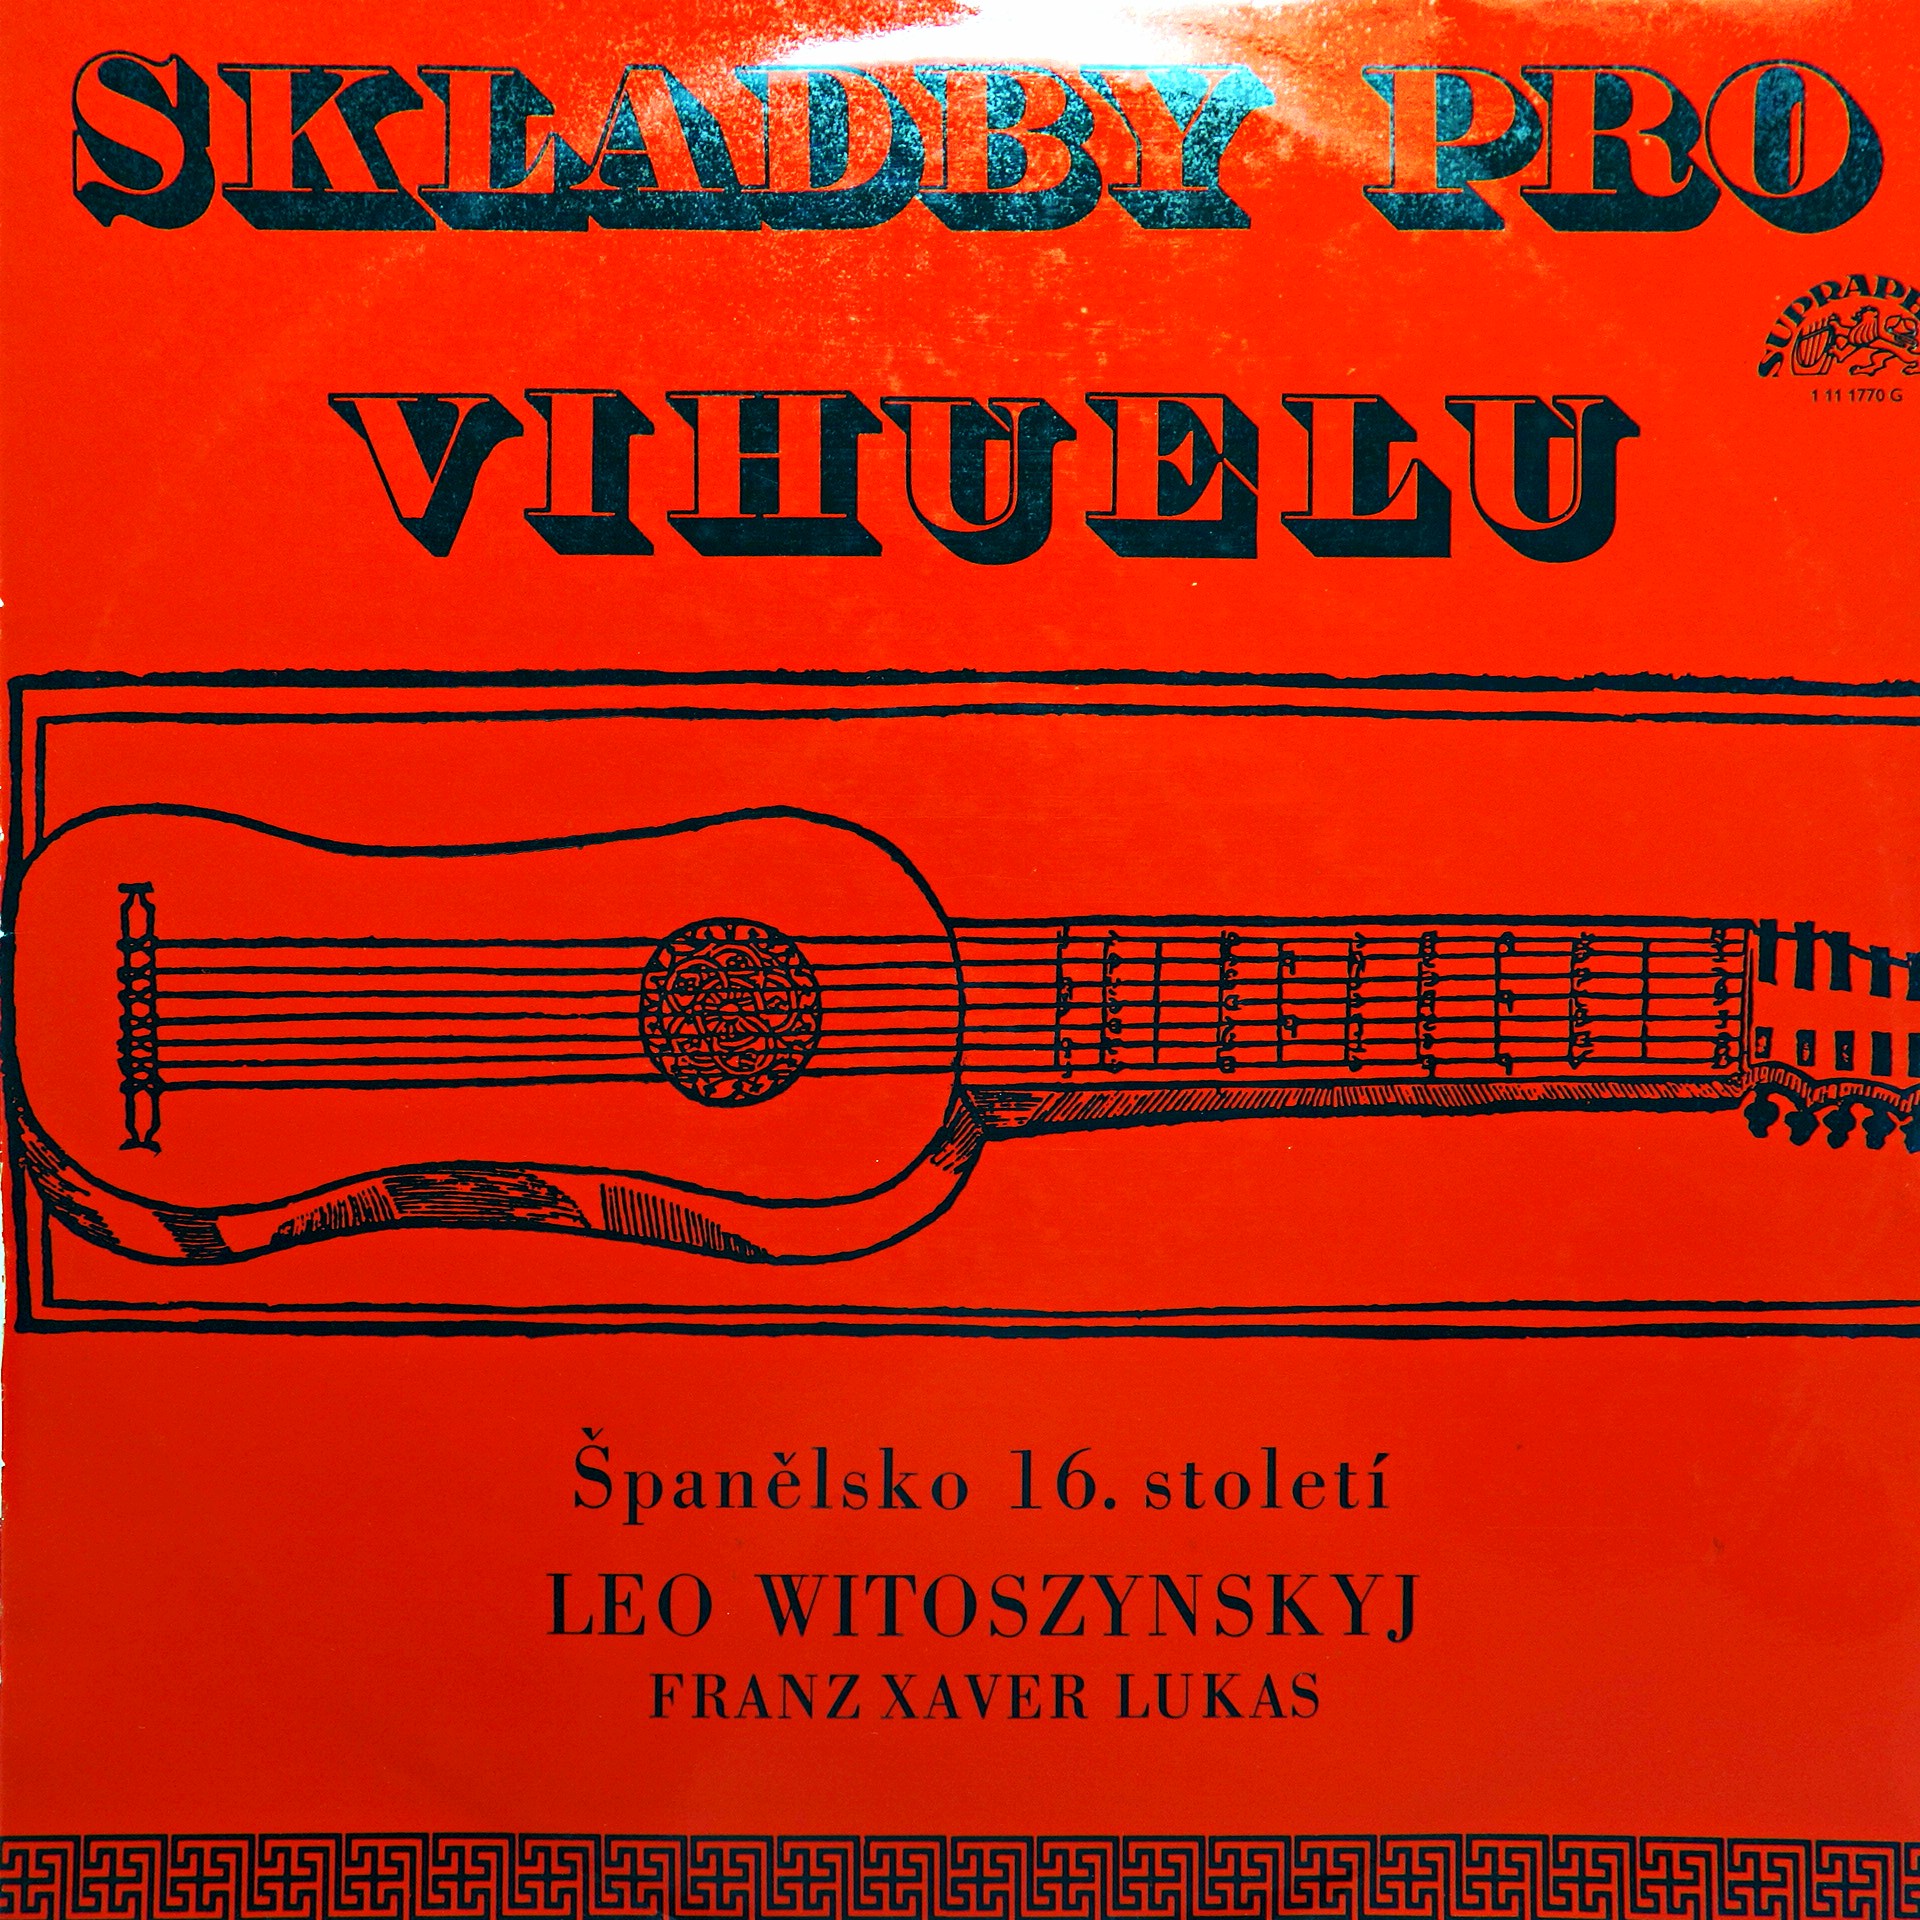 LP Skladby Pro Vihuelu - Španělsko 16. století